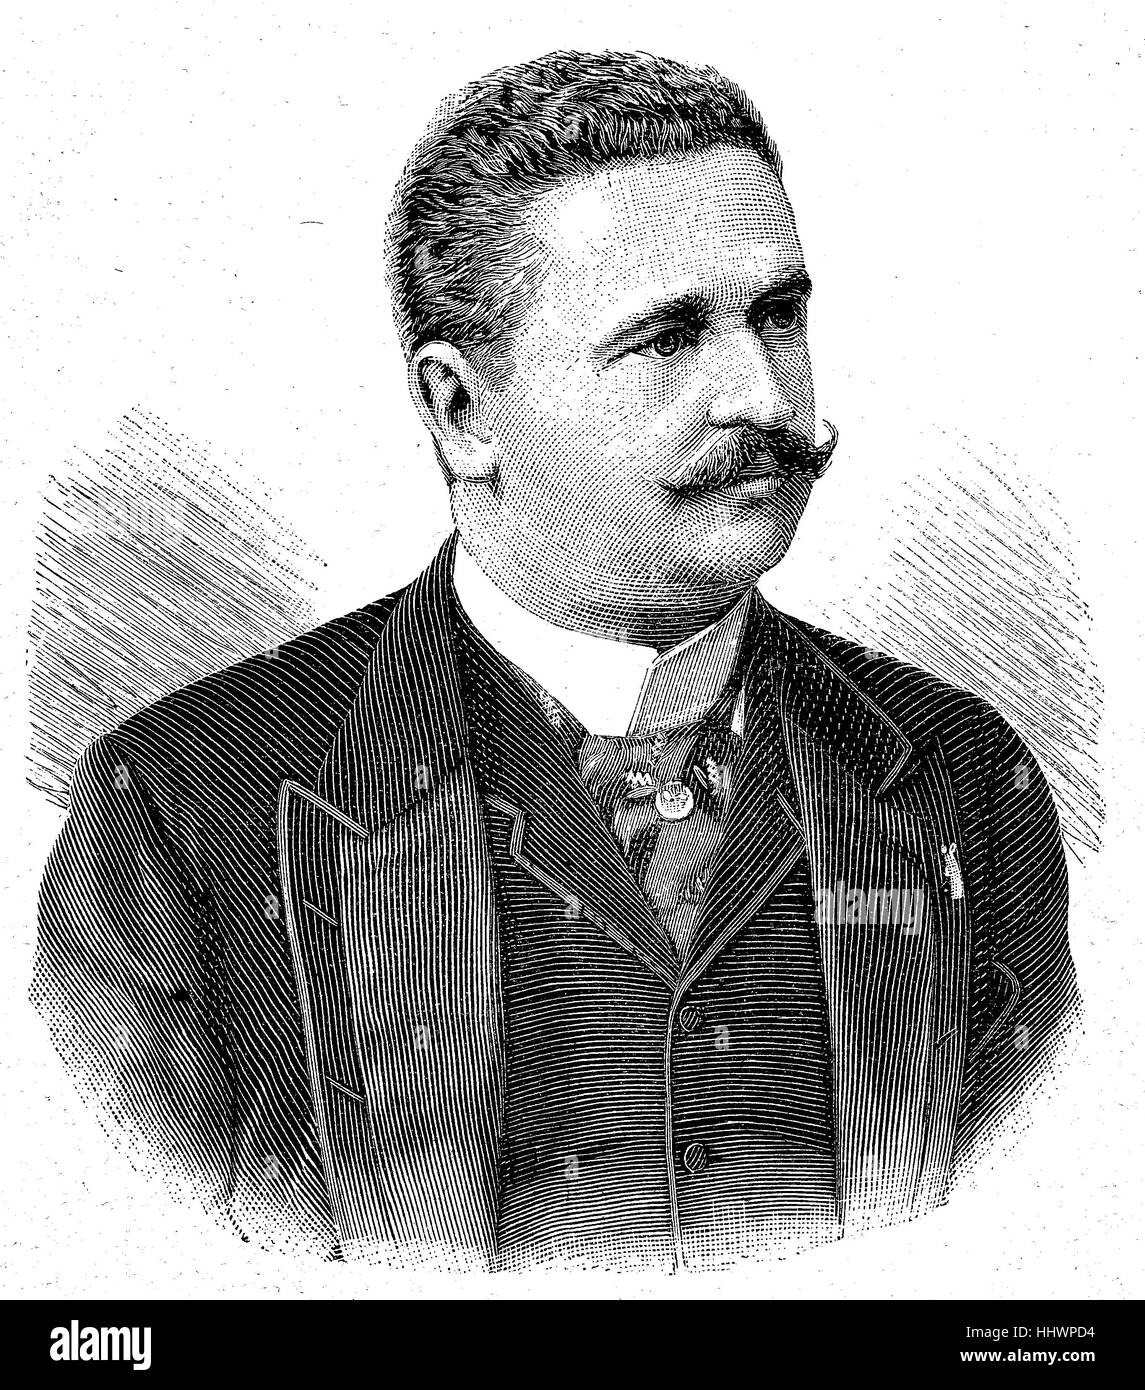 Konstantin Stoilov, 23 septembre 1853 O.S. - 23 mars 1901 O.S., était un homme politique bulgare de premier et deux fois premier ministre. , Image historique ou illustration, publié 1890, l'amélioration numérique Banque D'Images